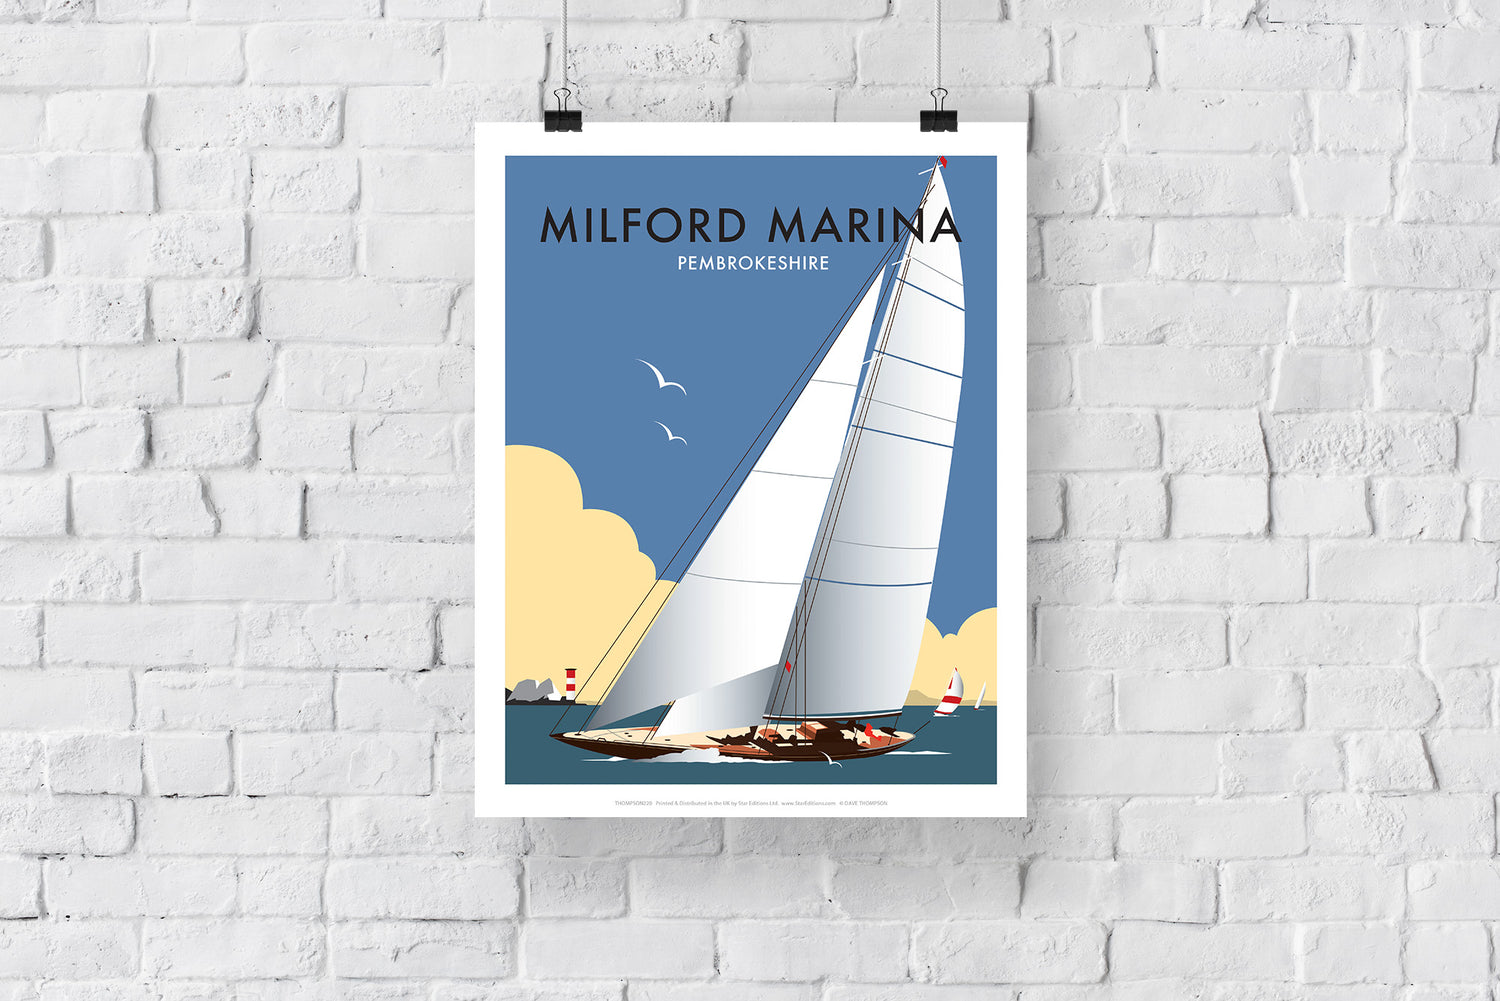 Milford Marina, South wales - Art Print